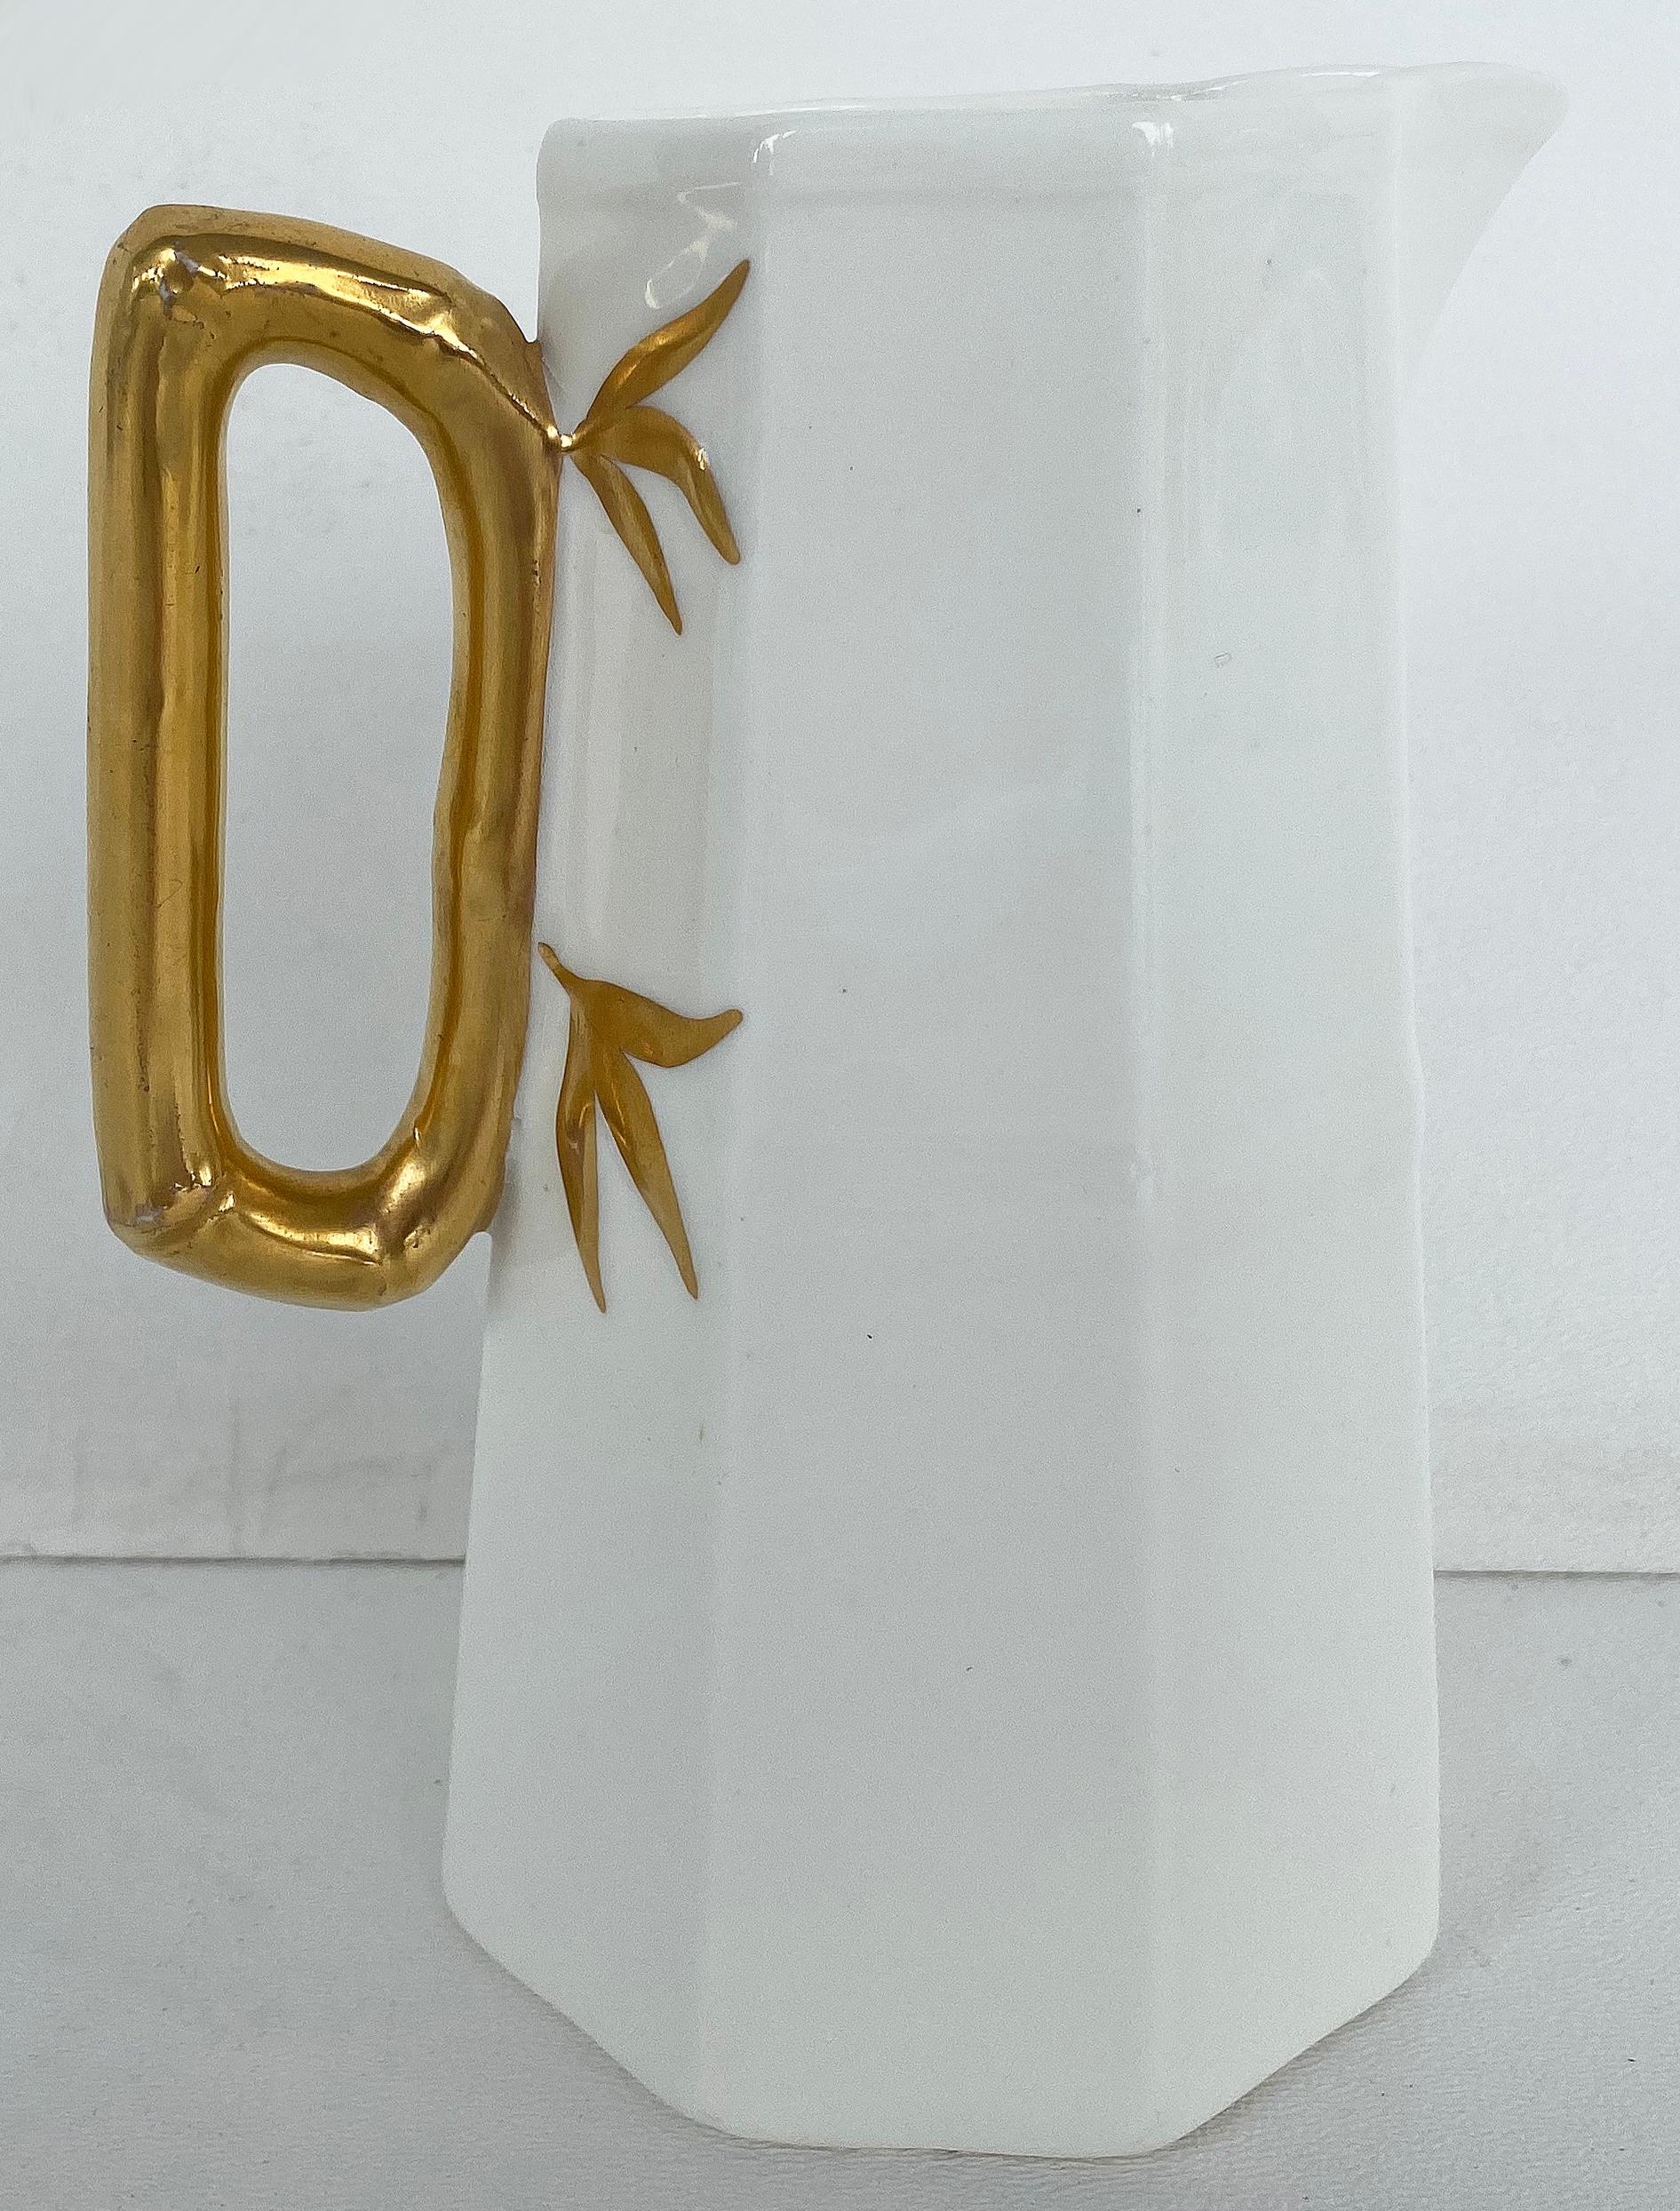 Pichet ancien en porcelaine ironstone avec anse dorée ornementée

Nous vous proposons un beau pichet octogonal en grès blanc antique avec une merveilleuse anse dorée de façon fantaisiste. Il servira non seulement de petit pichet mais fera aussi un